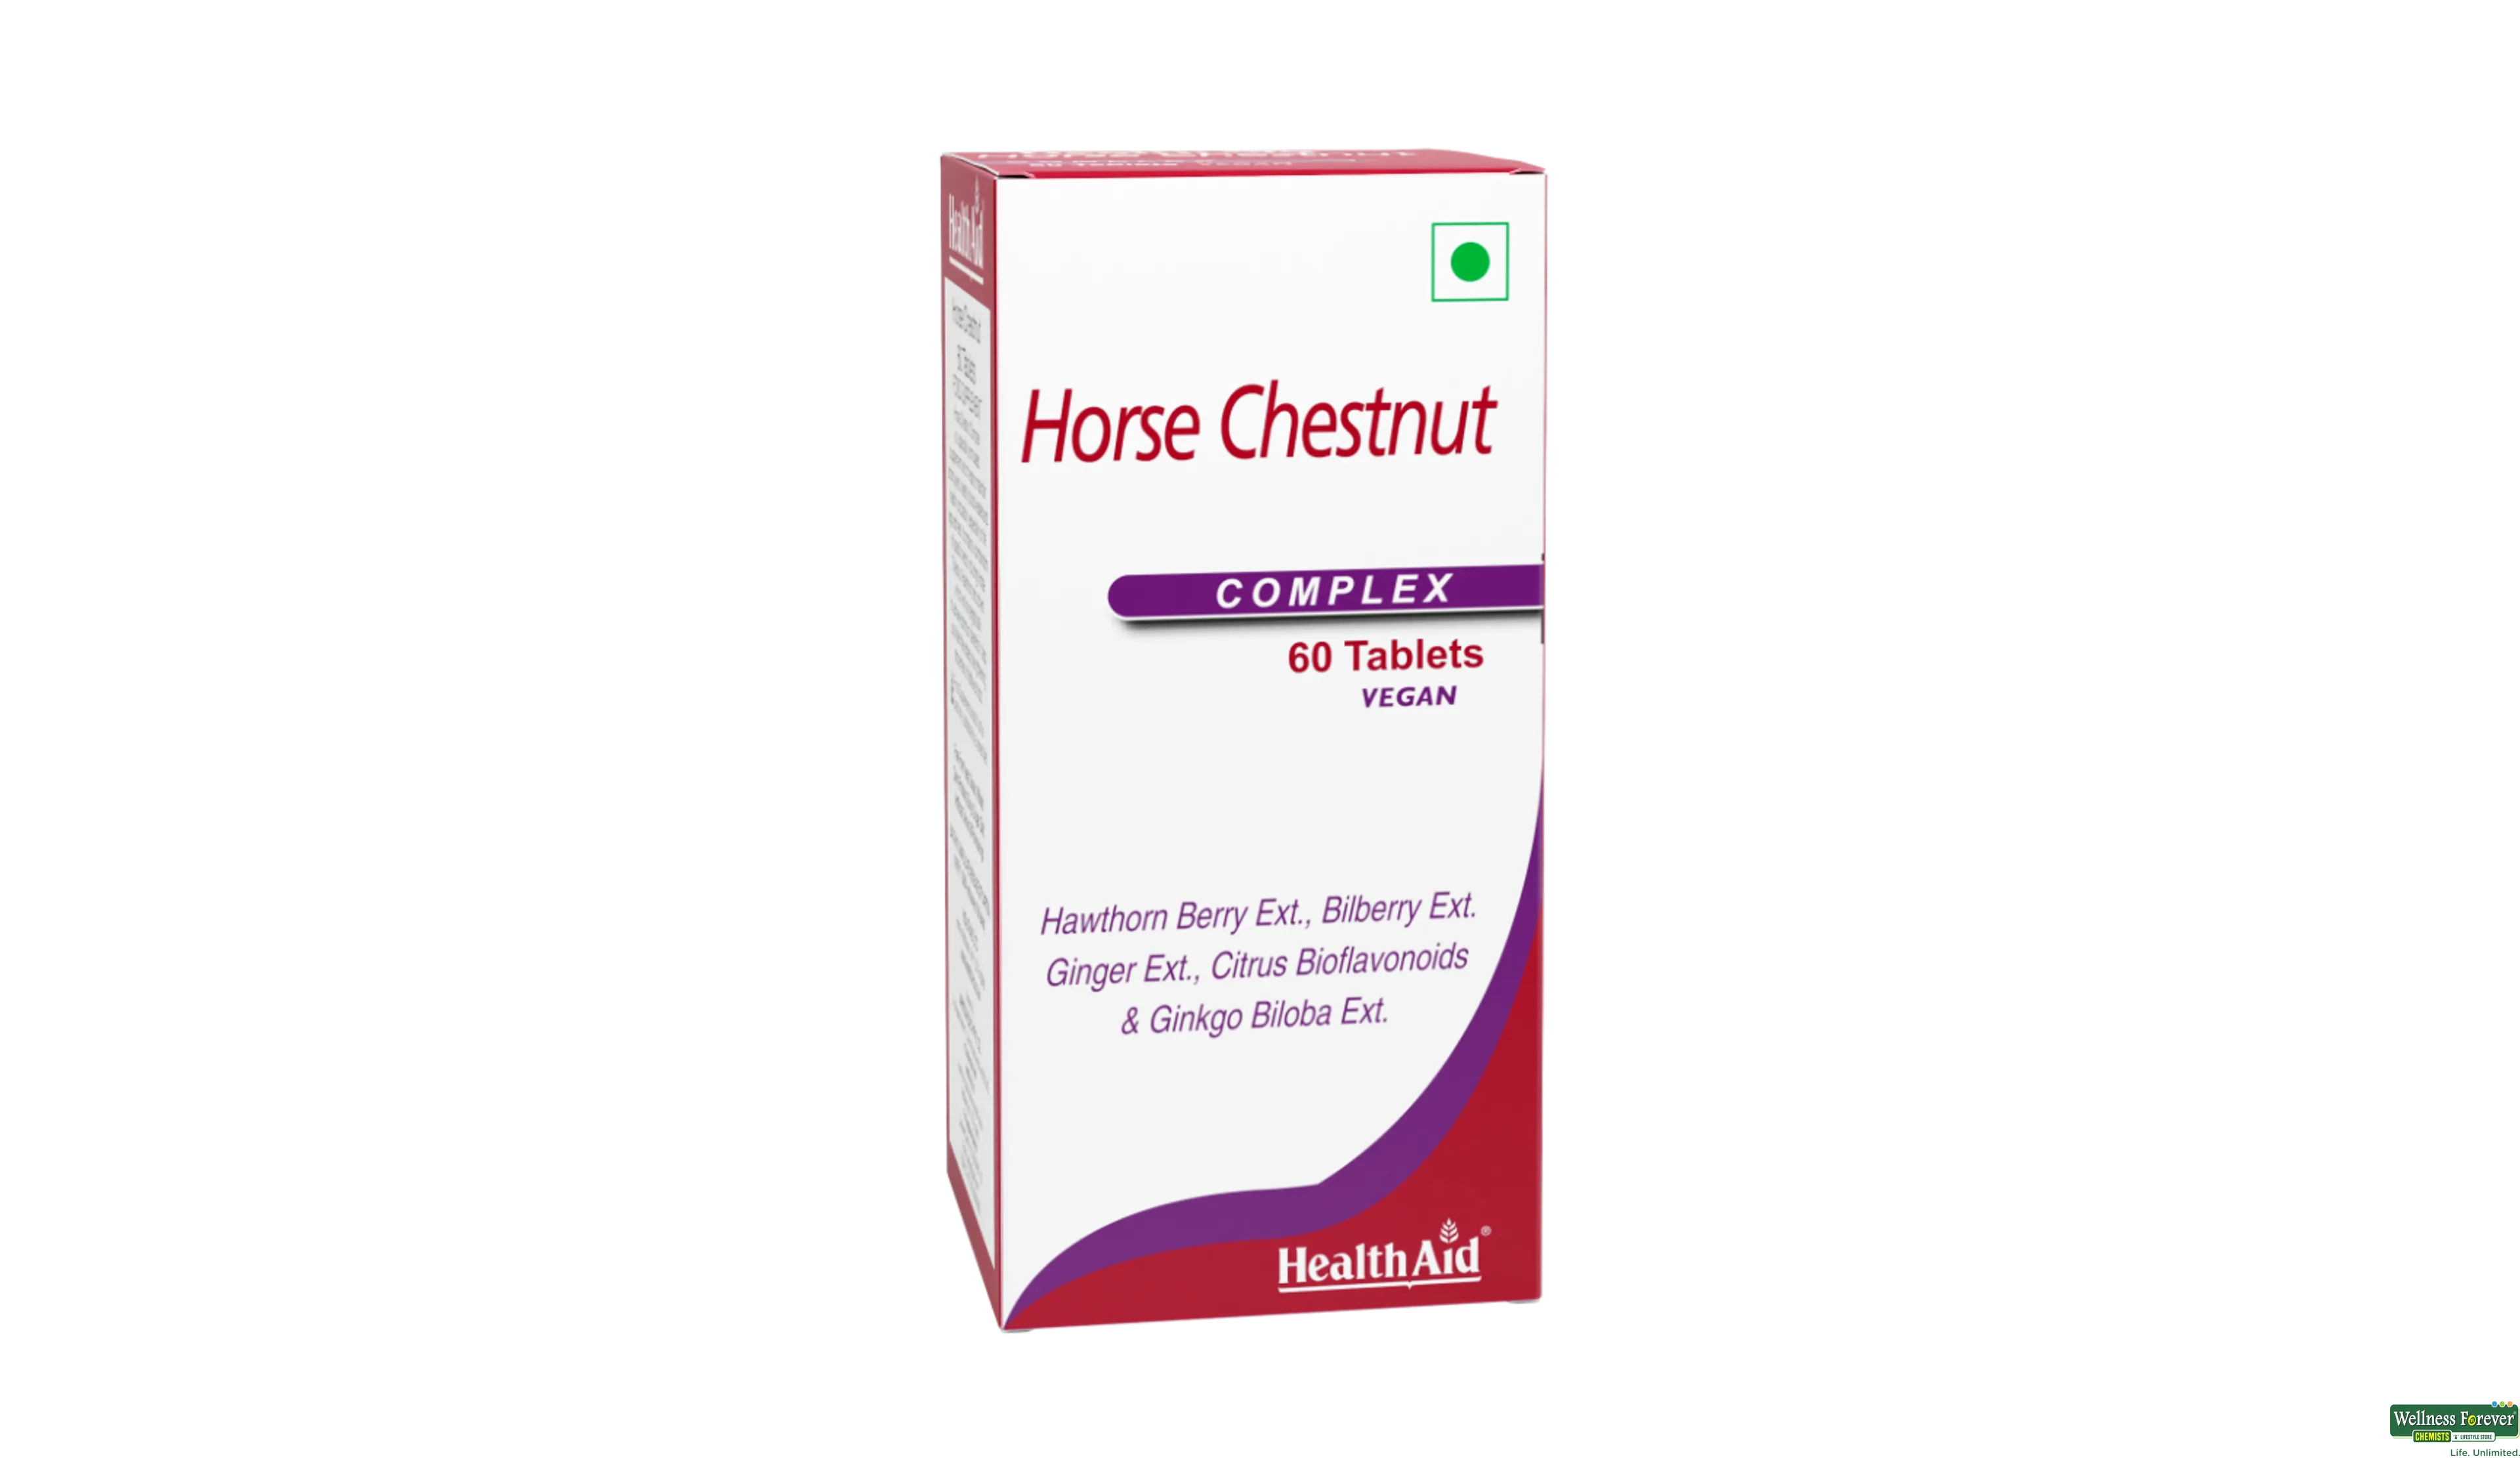 HEALTH AID HORSE CHESTNUT/BUTCHER 60TAB- 1, 60TAB, 